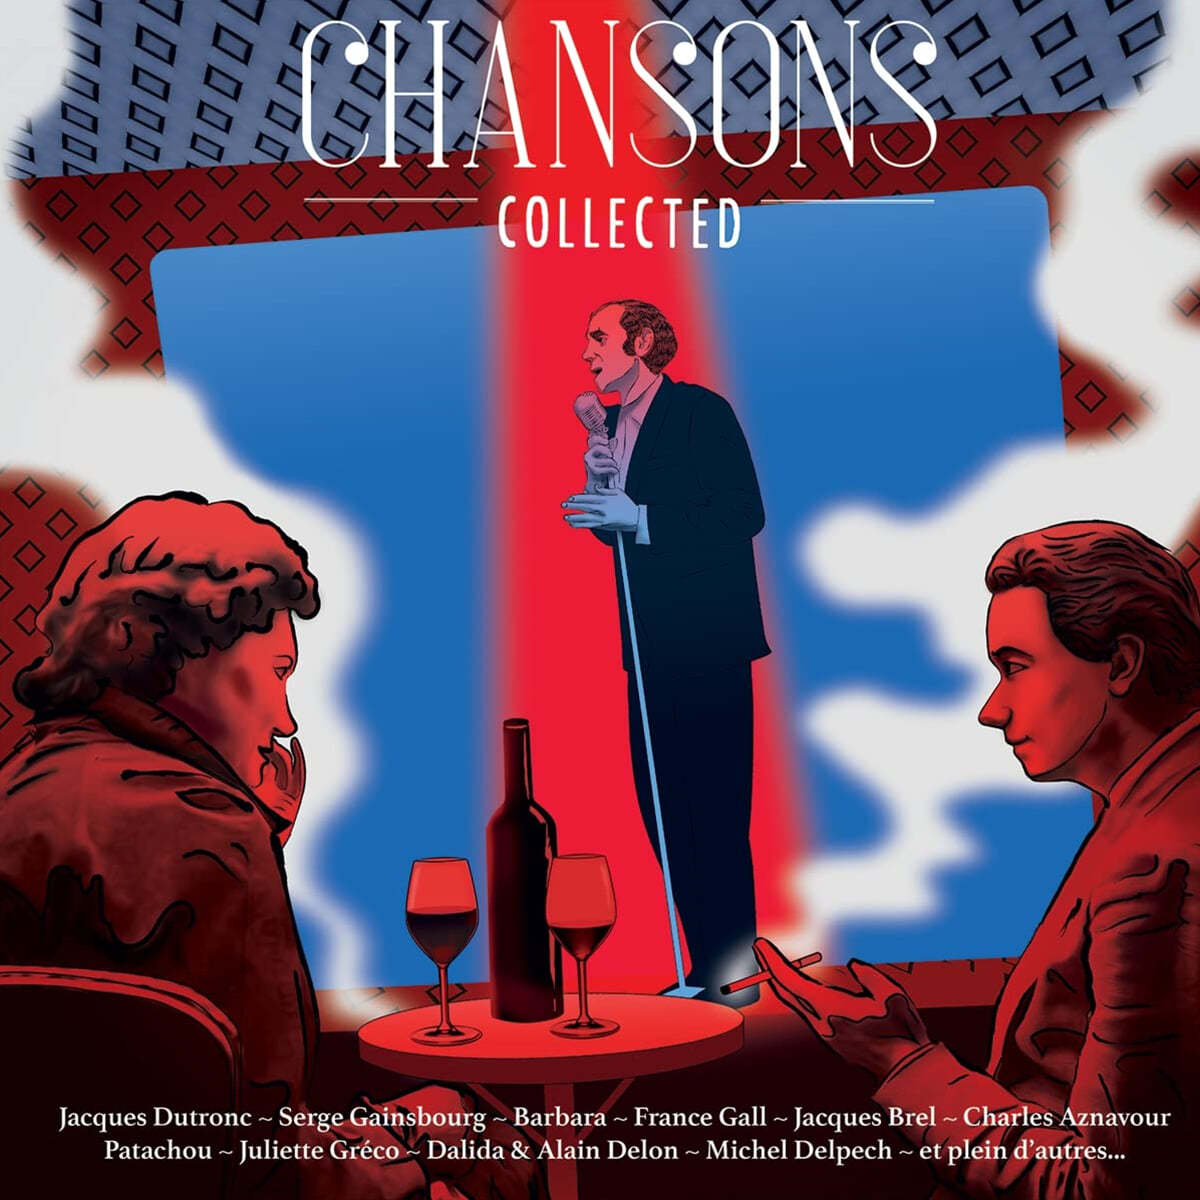 인기 샹송 모음집 (Chansons Collected) [레드 & 블루 컬러 2LP]